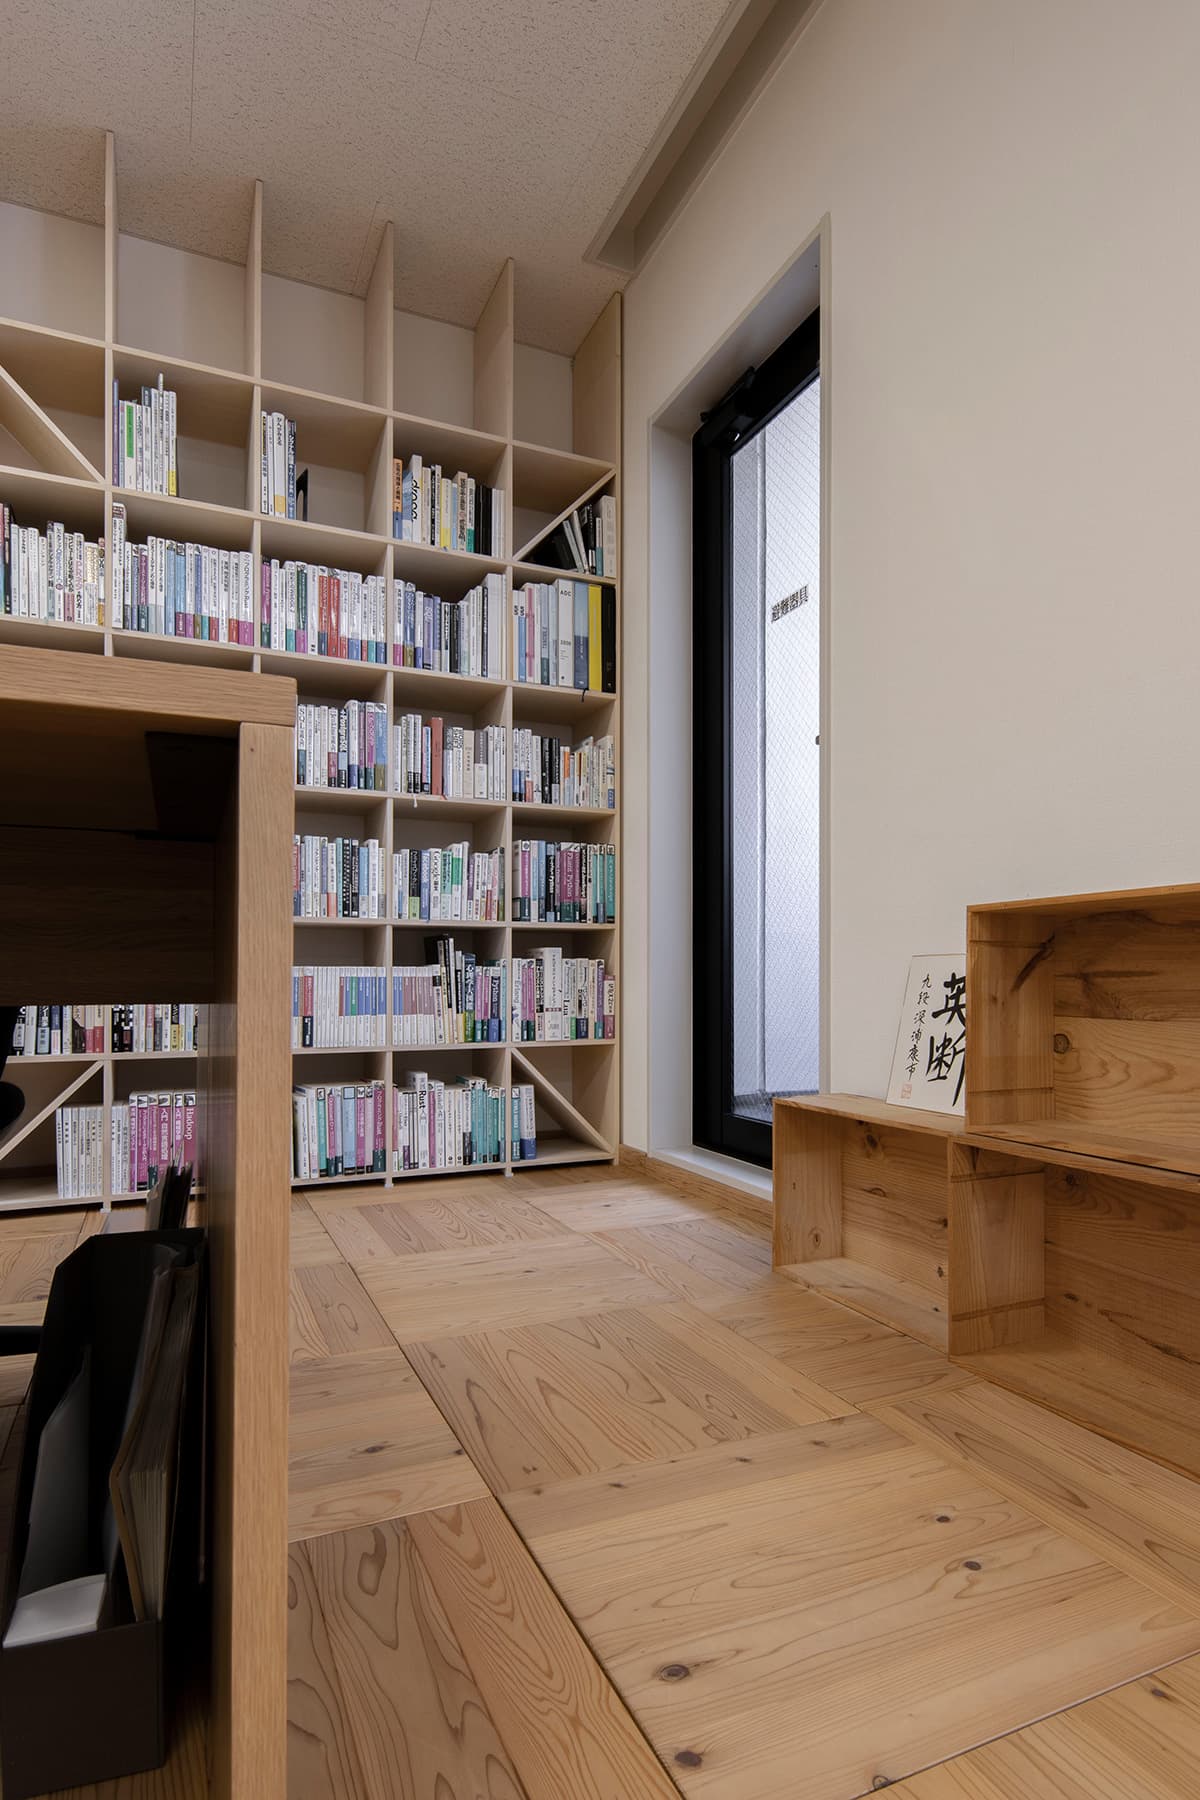 株式会社テンクー様のオフィス – Shelf 壁一面の本棚 